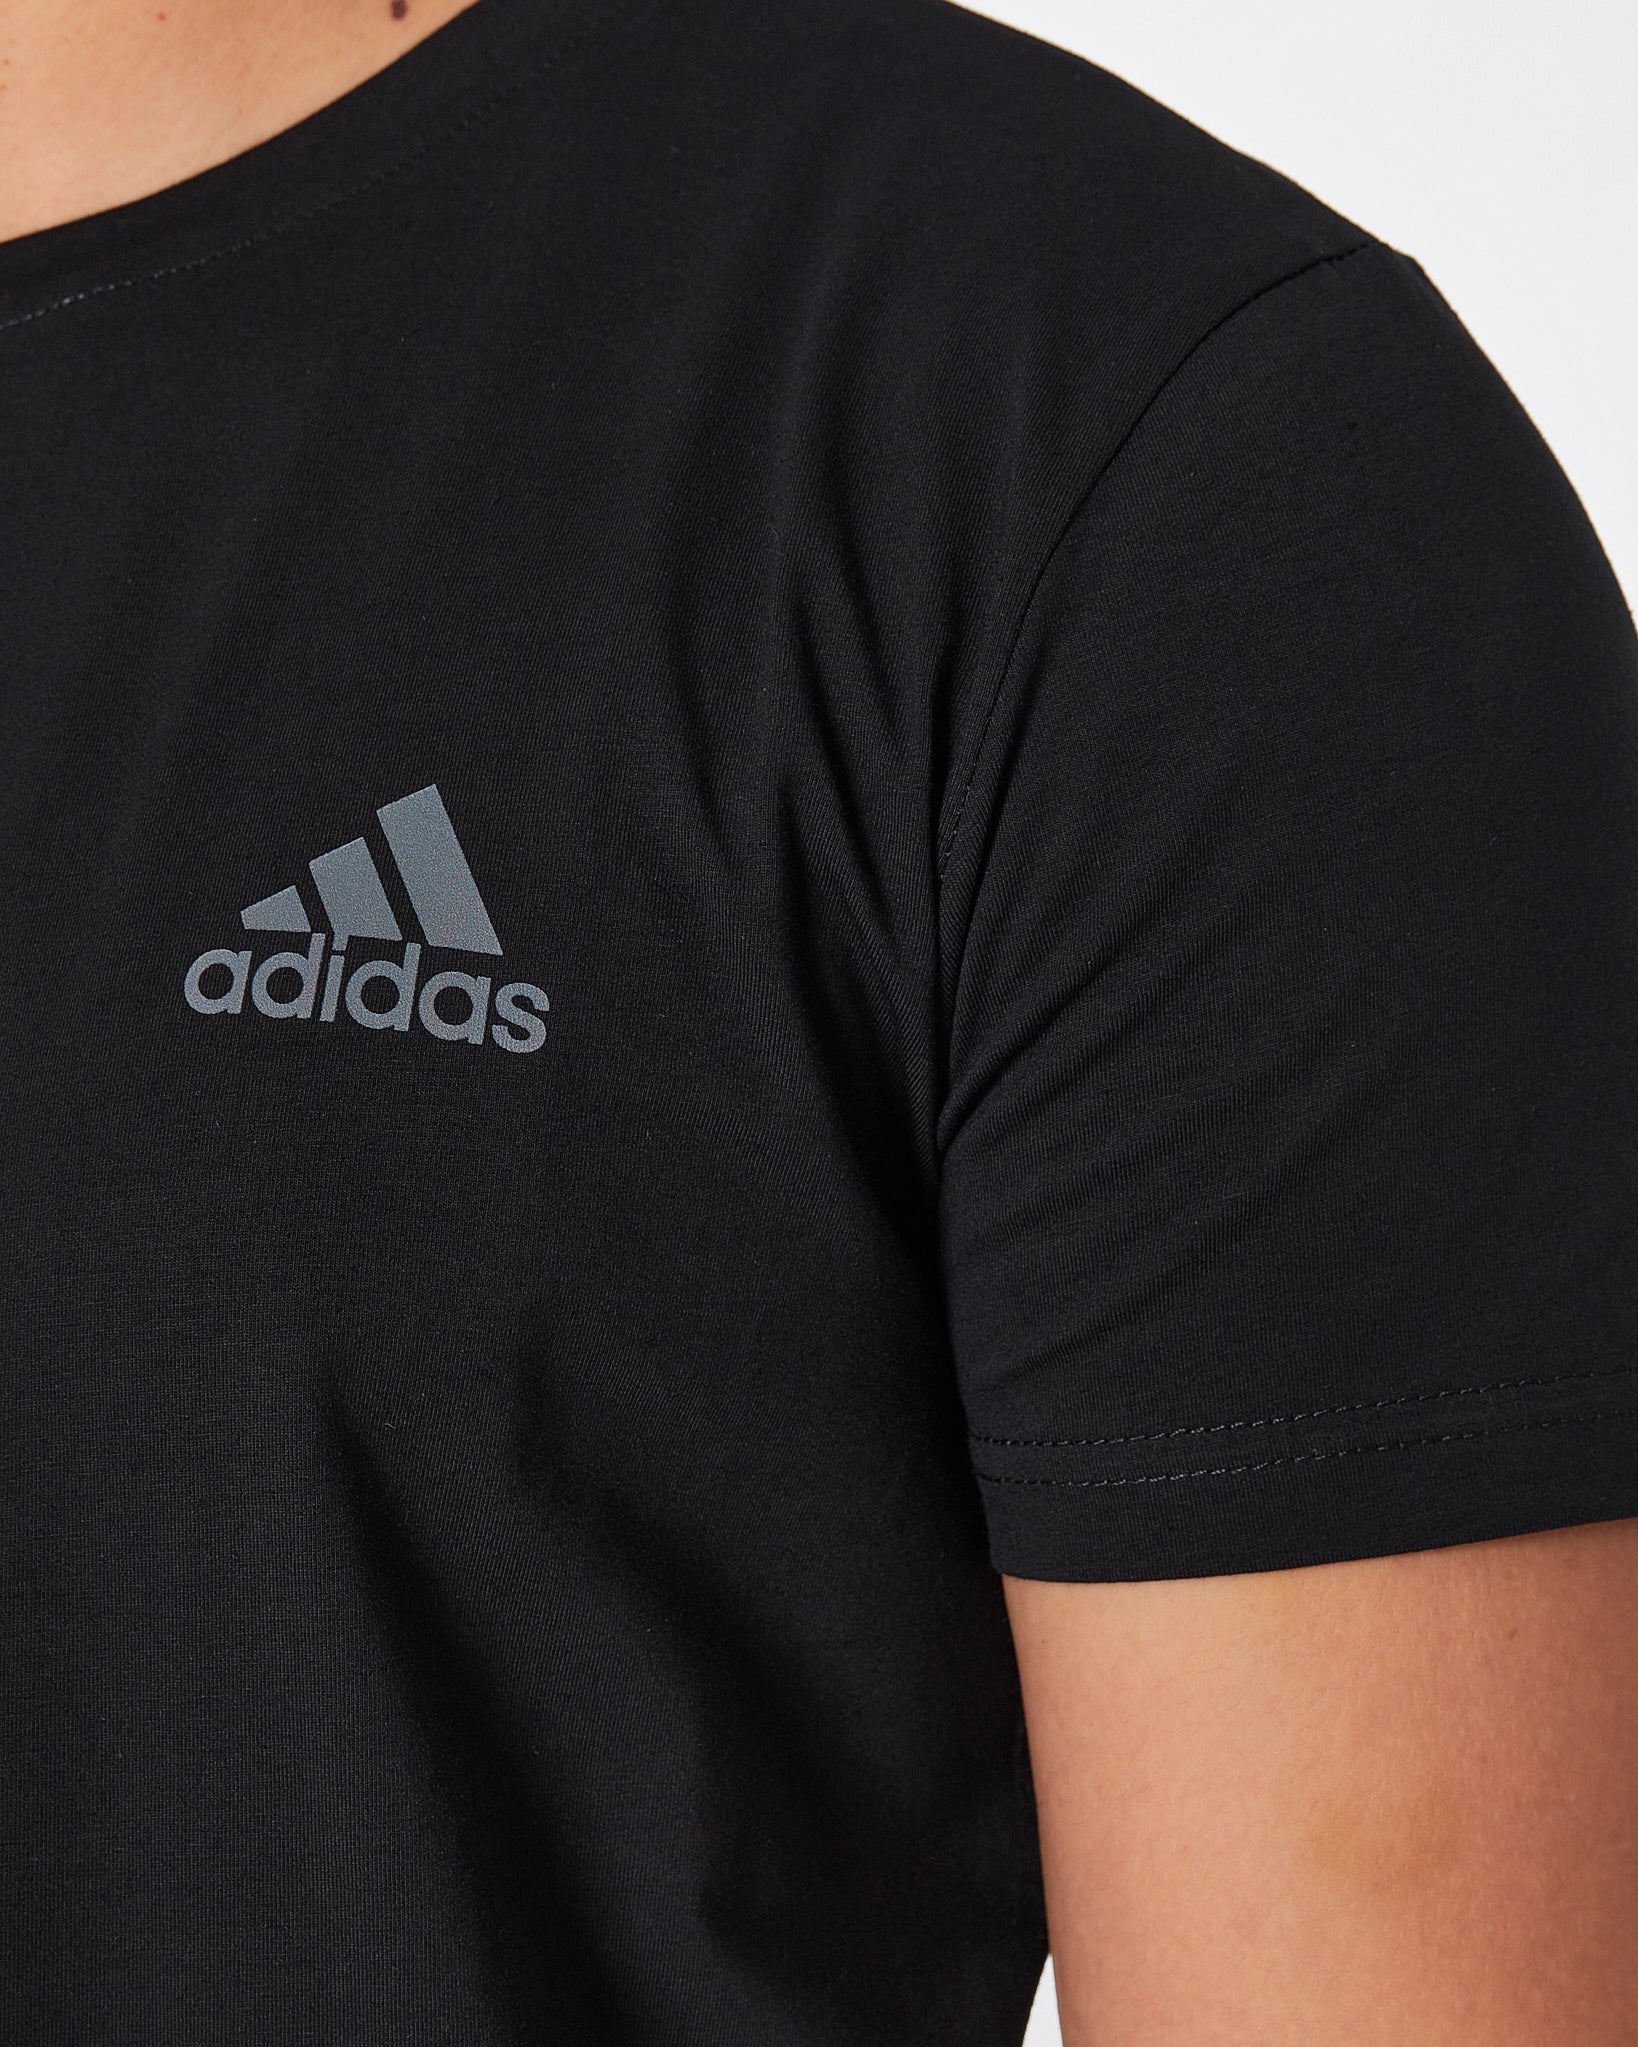 ADI Logo Vertical Printed Men Black T-Shirt 15.50